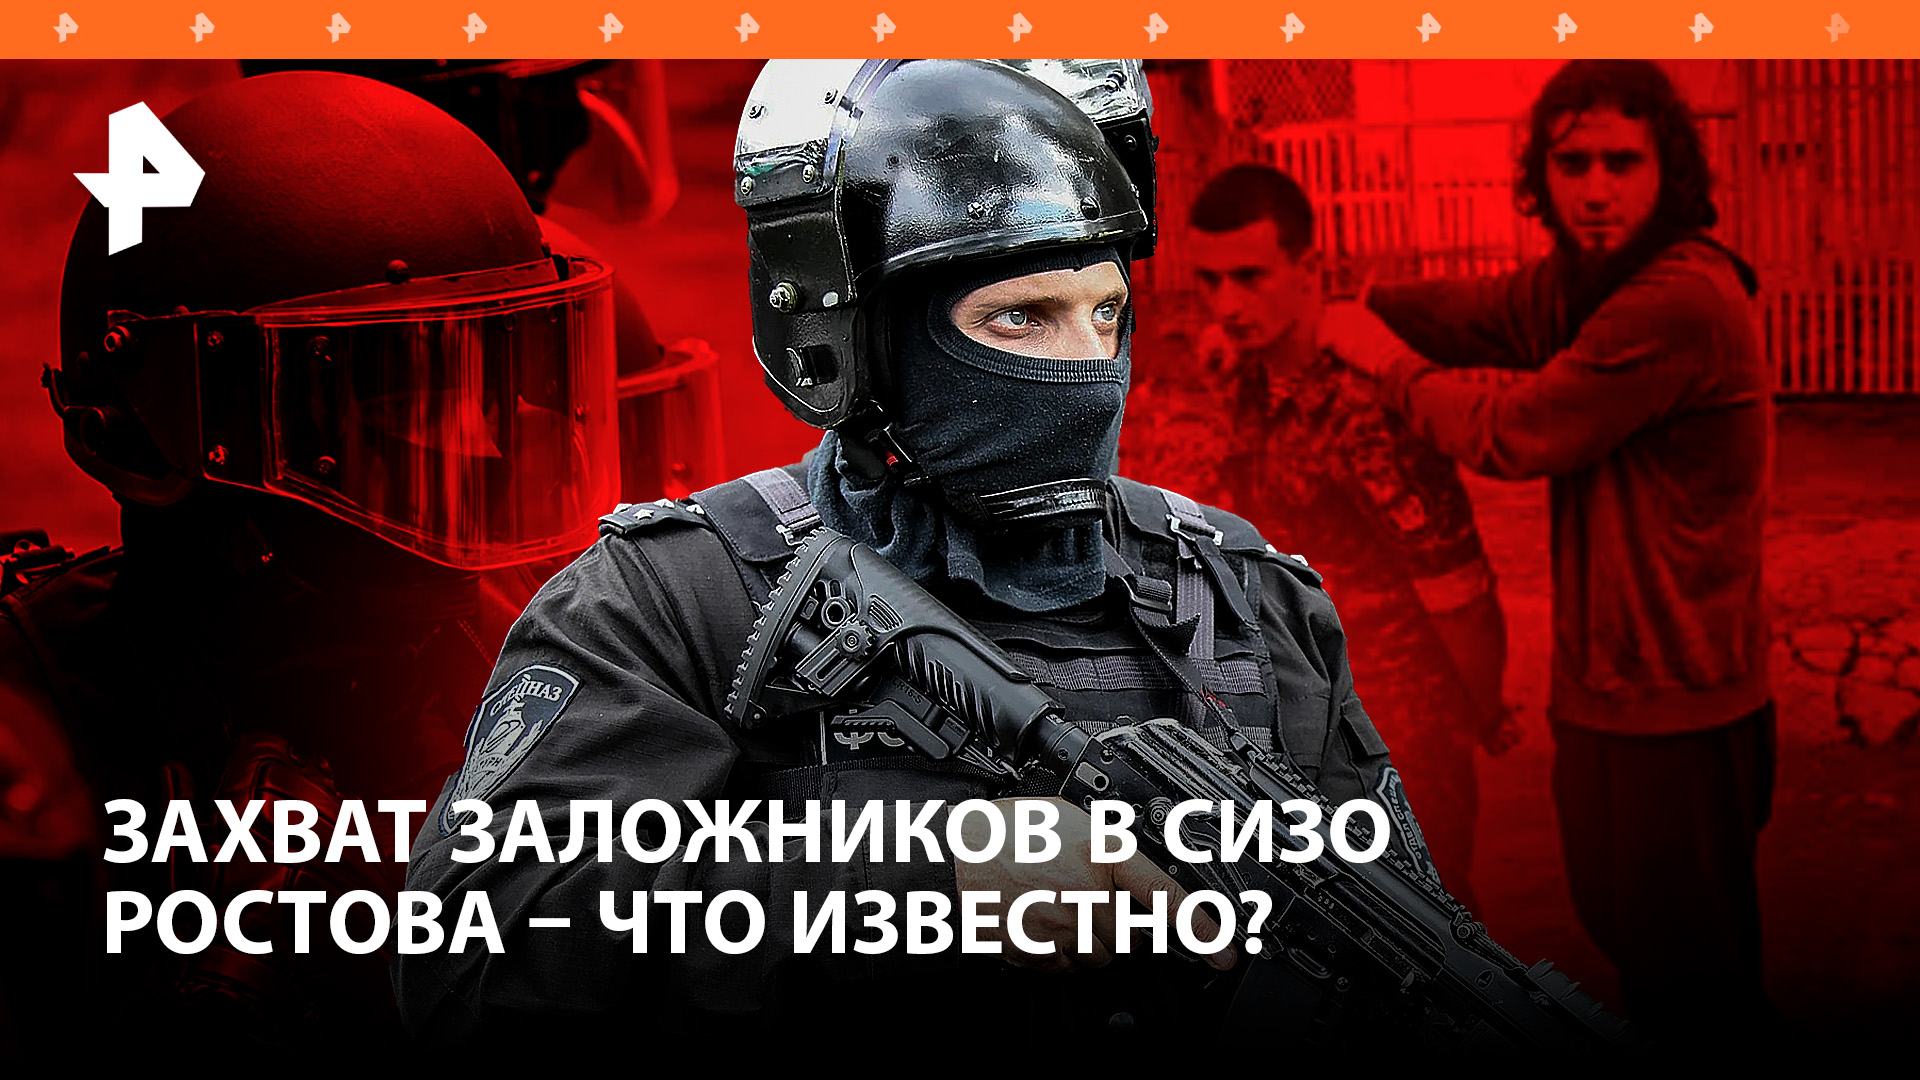 Штурм СИЗО в Ростове: террористы взяли заложников: что известно?